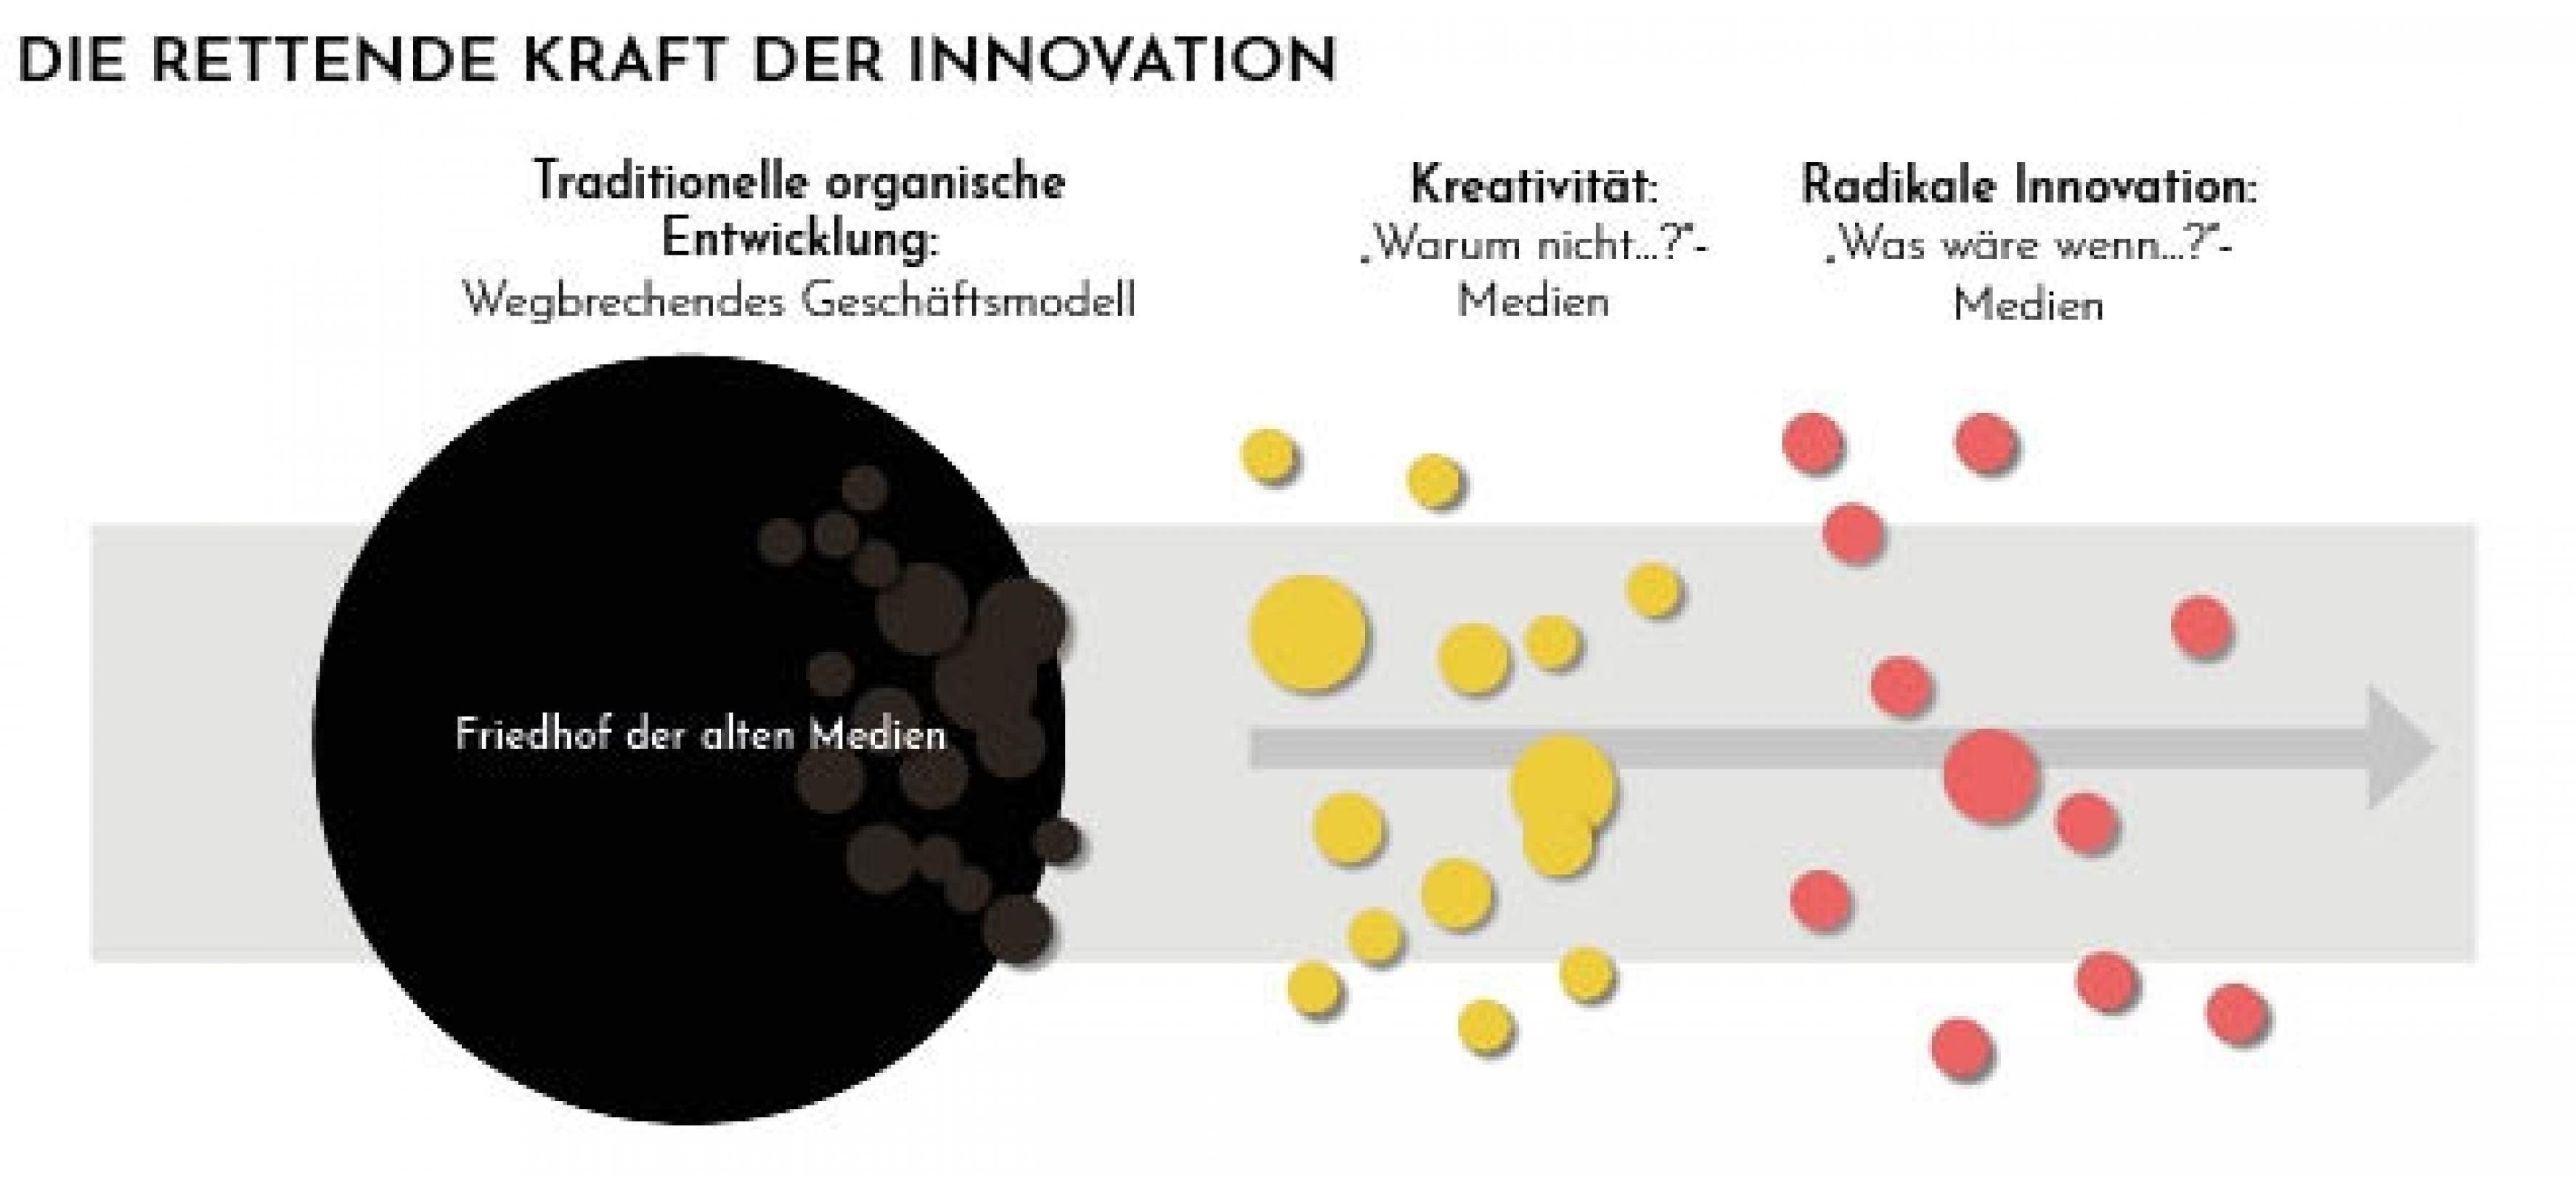 Modell 3-Farben der Innovation, angepasst auf ausbleibende Innovation in Medienhäuser